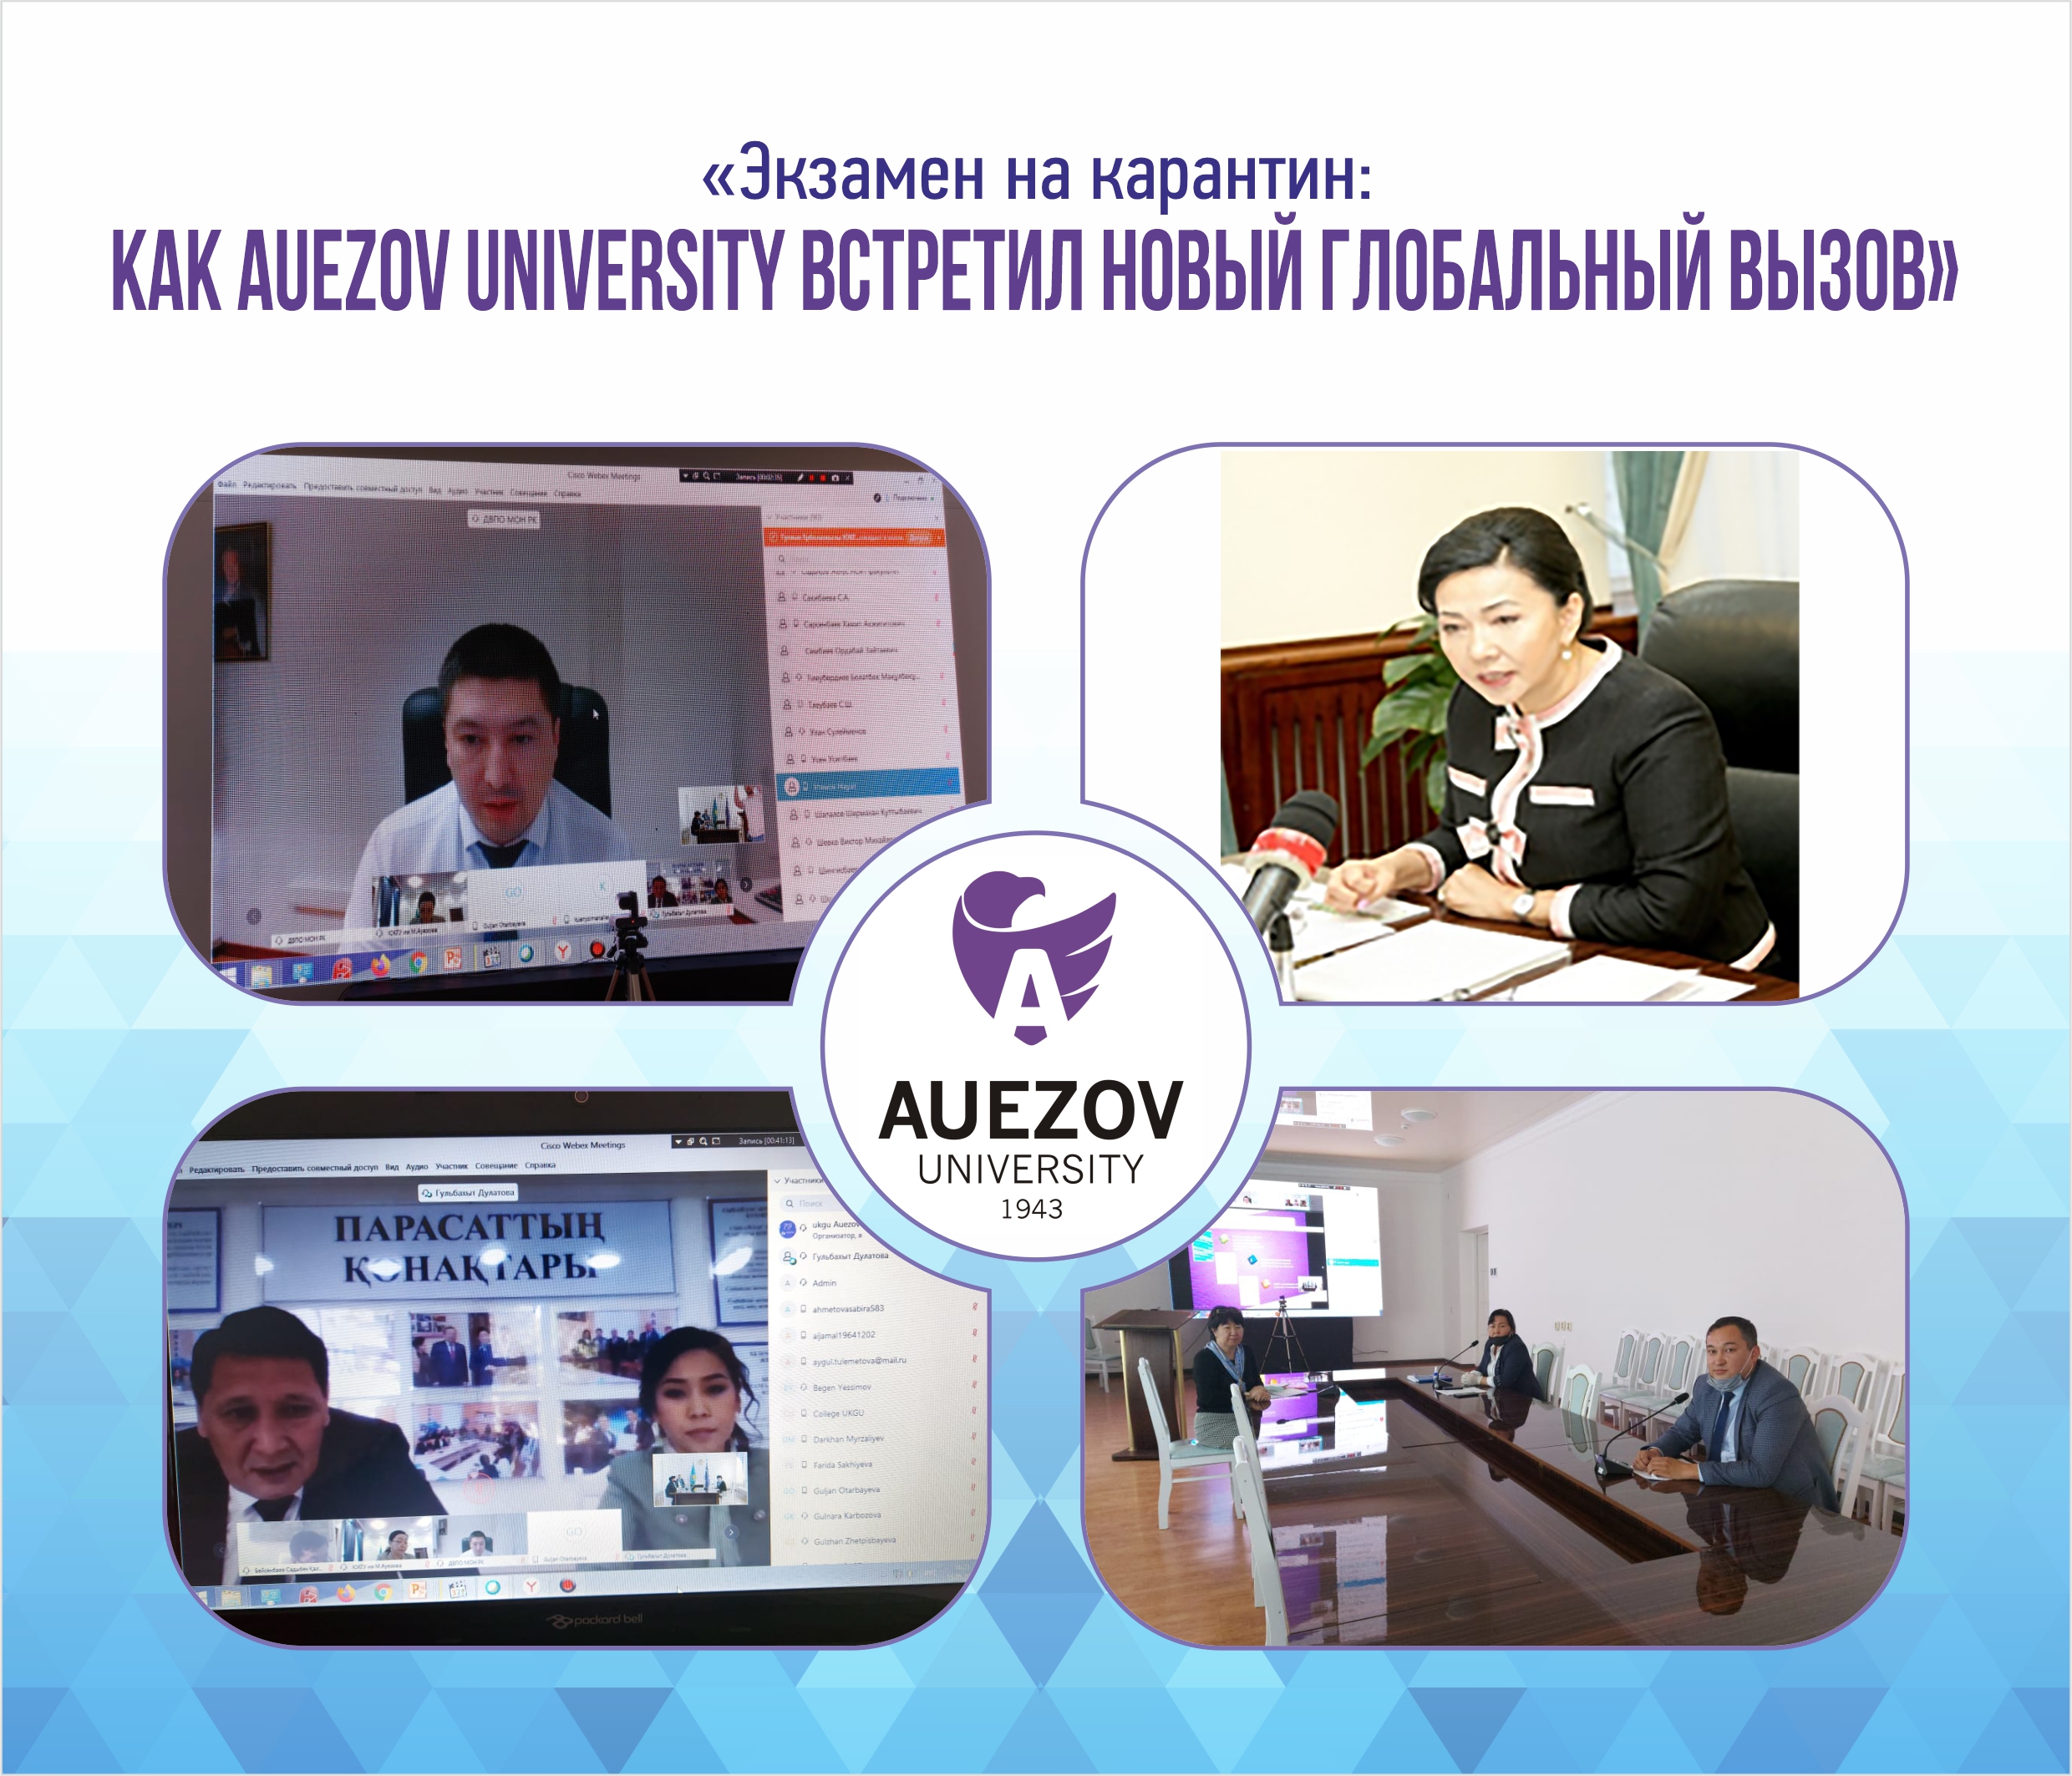 «Экзамен на карантин: как Auezov University встретил новый глобальный вызов»